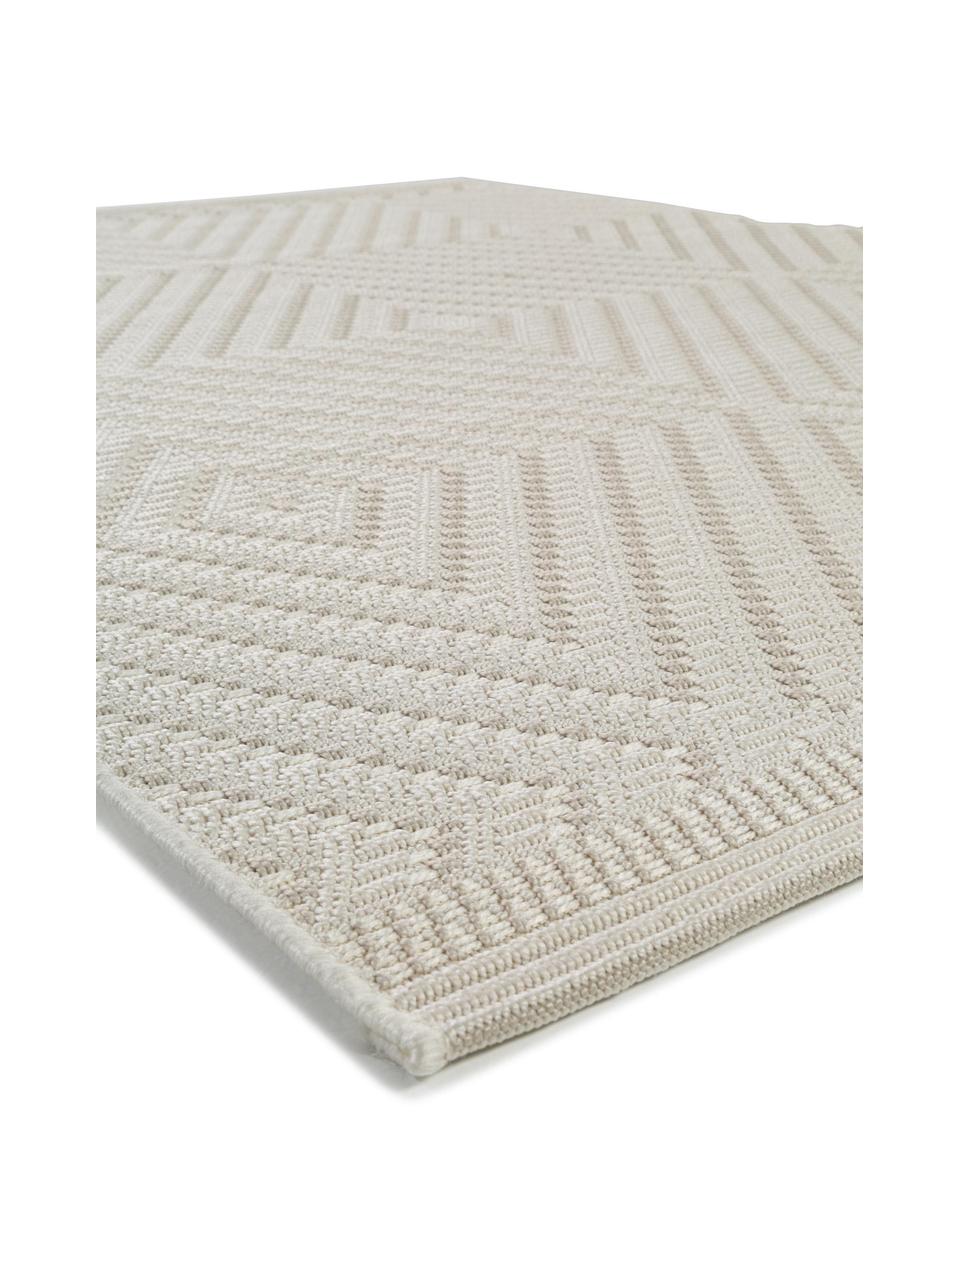 Interiérový/exteriérový koberec Naoto, 100 % polypropylen, Tlumeně bílá, světle béžová, Š 80 cm, D 150 cm (velikost XS)